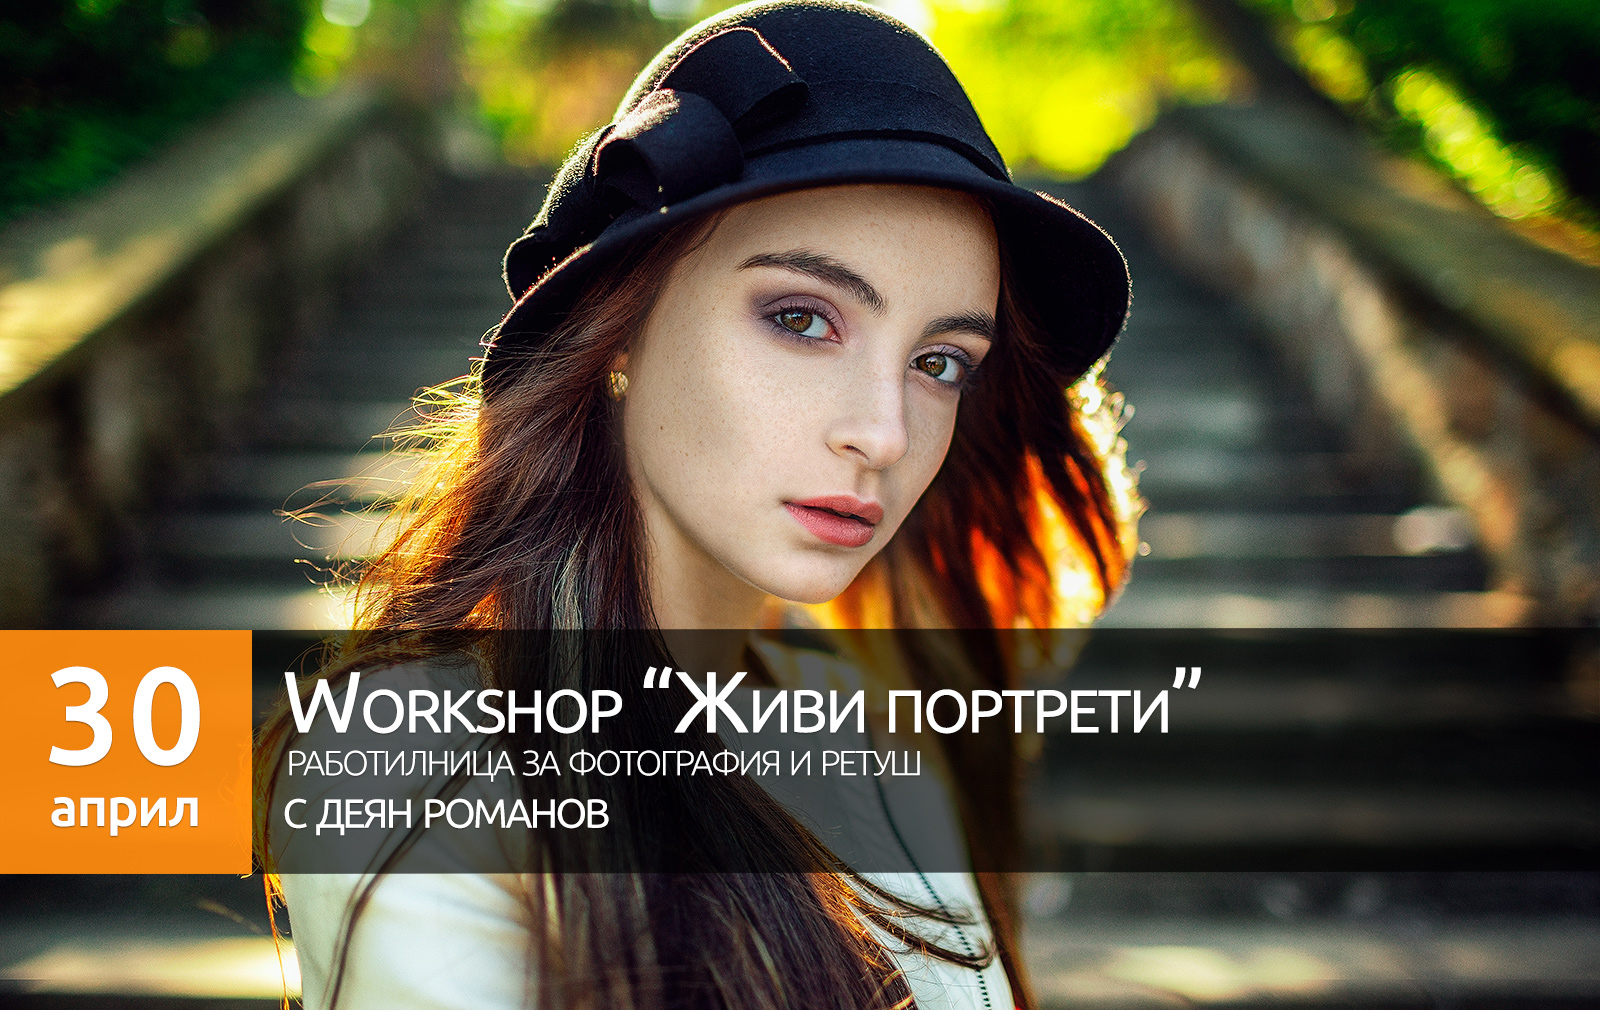 **Workshop "Живи портрети" 30 април гр Пловдив**